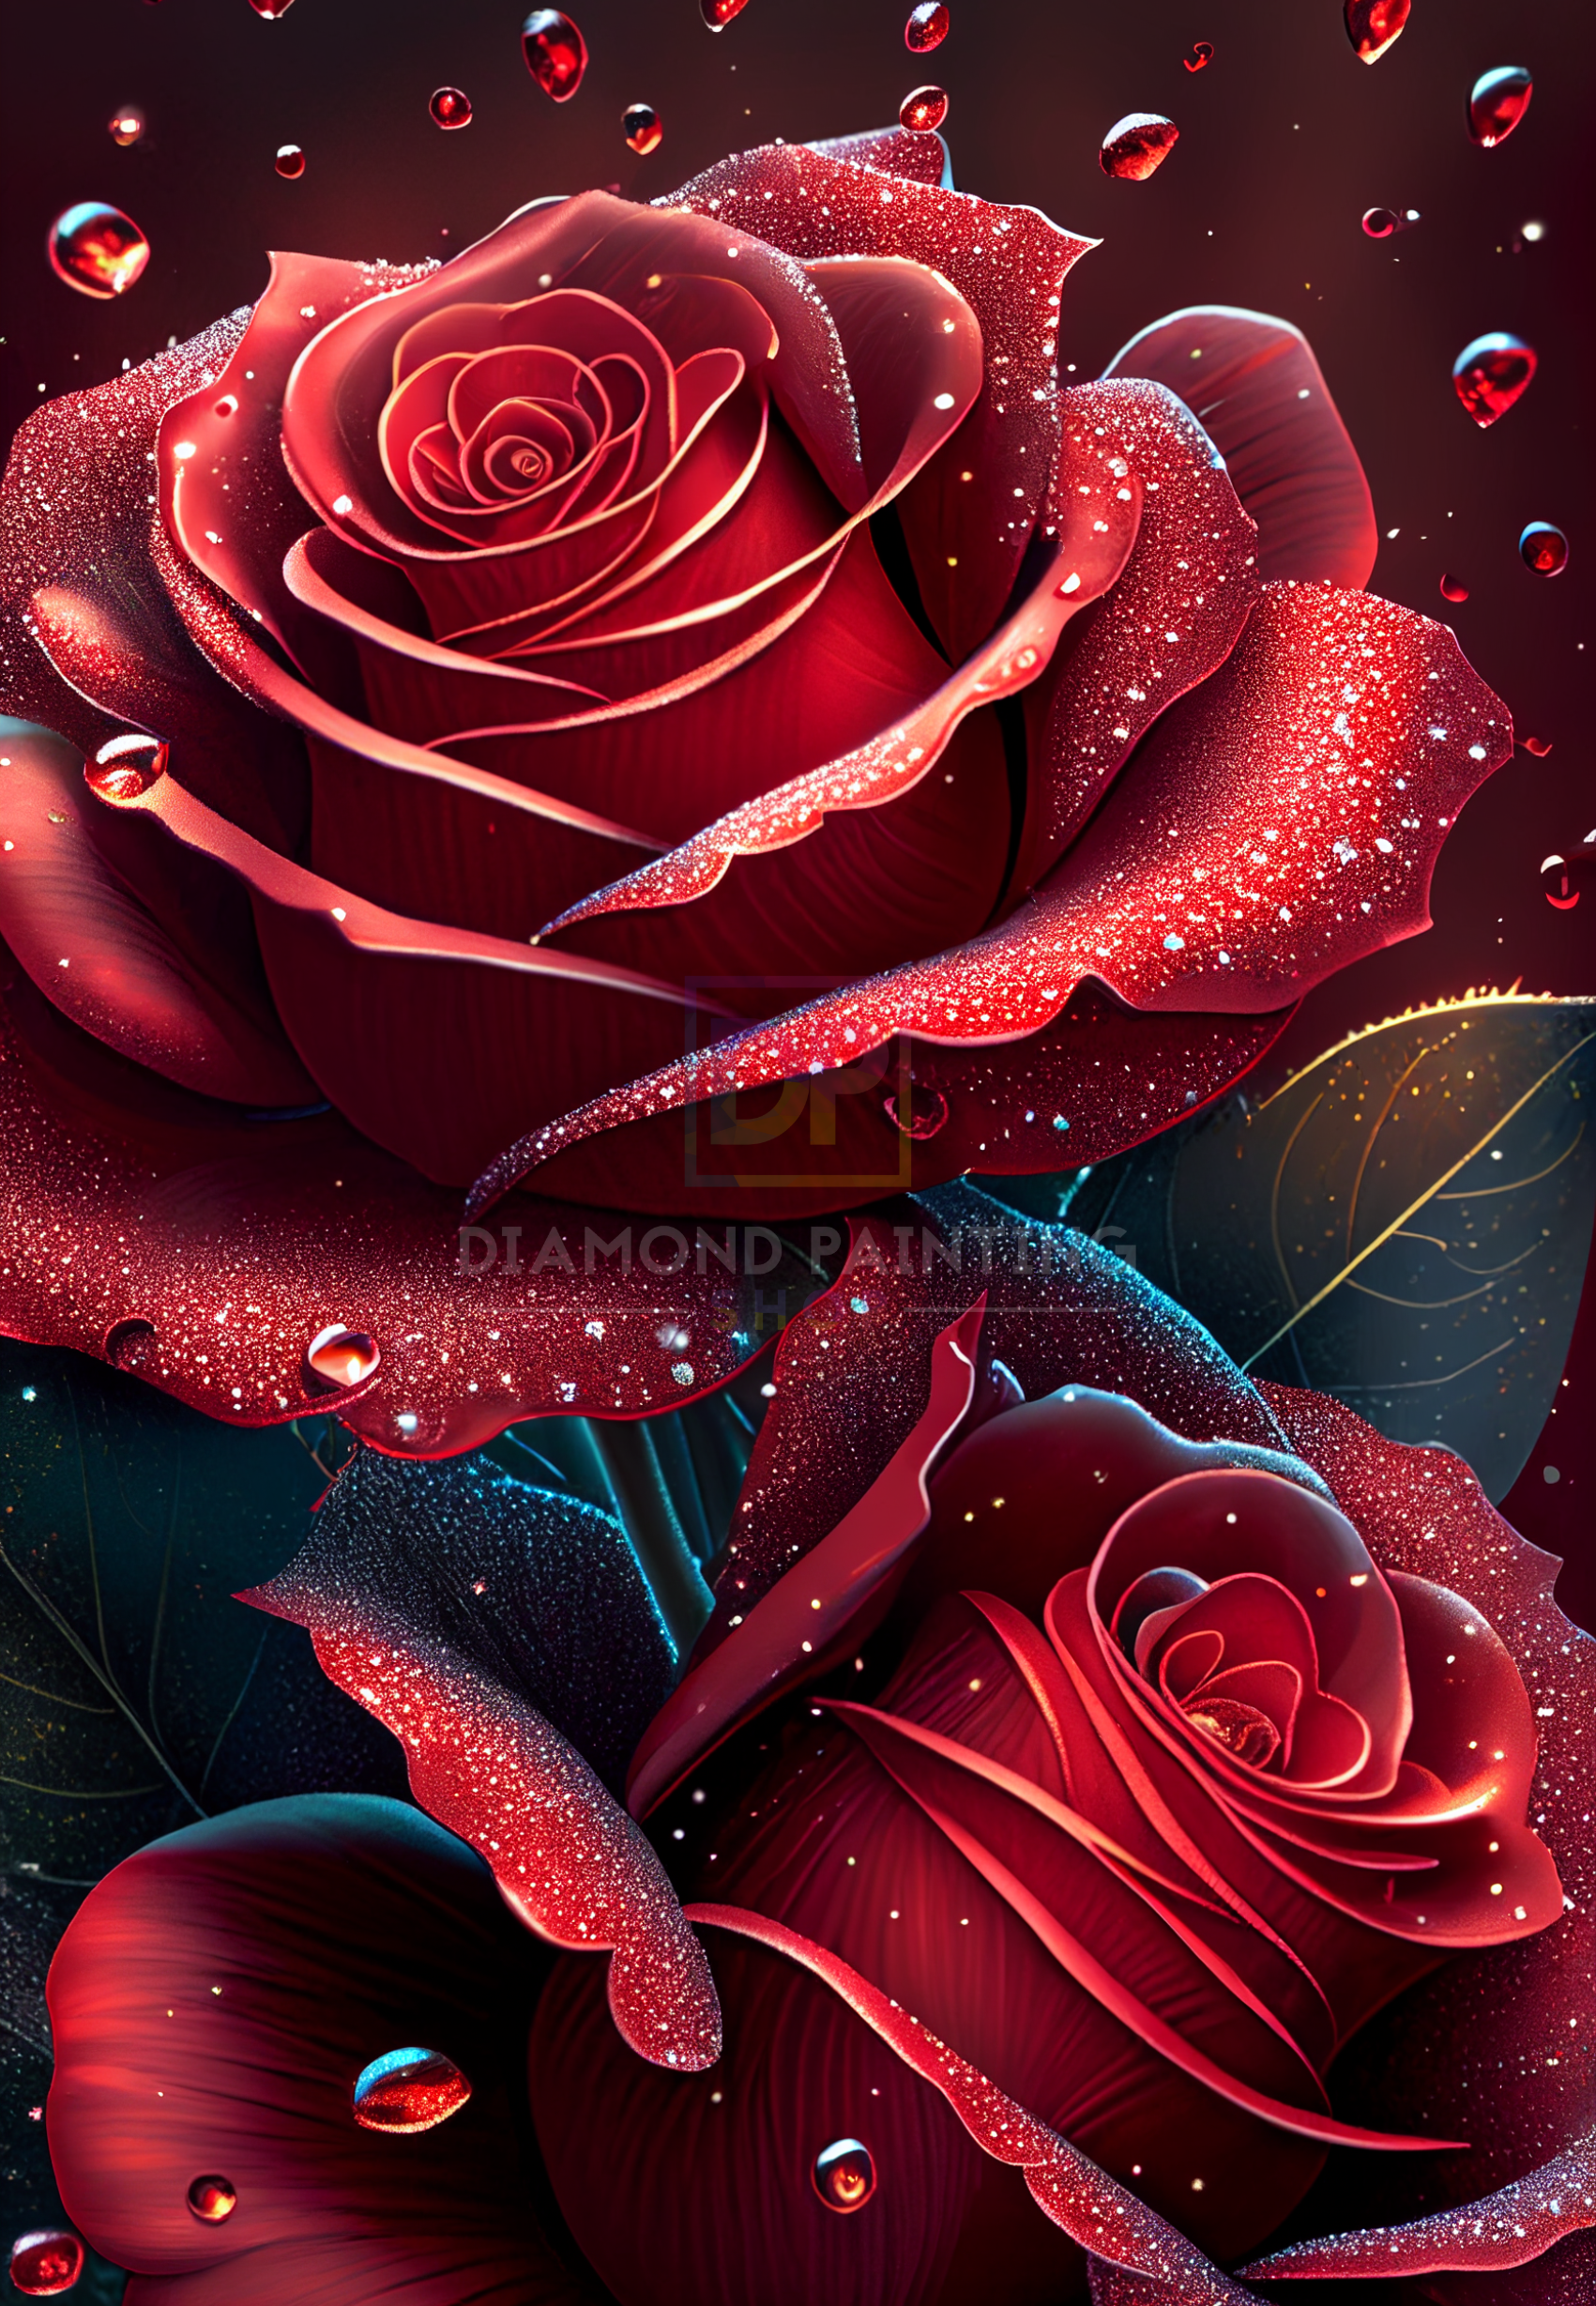 Februar | Rote Rosen